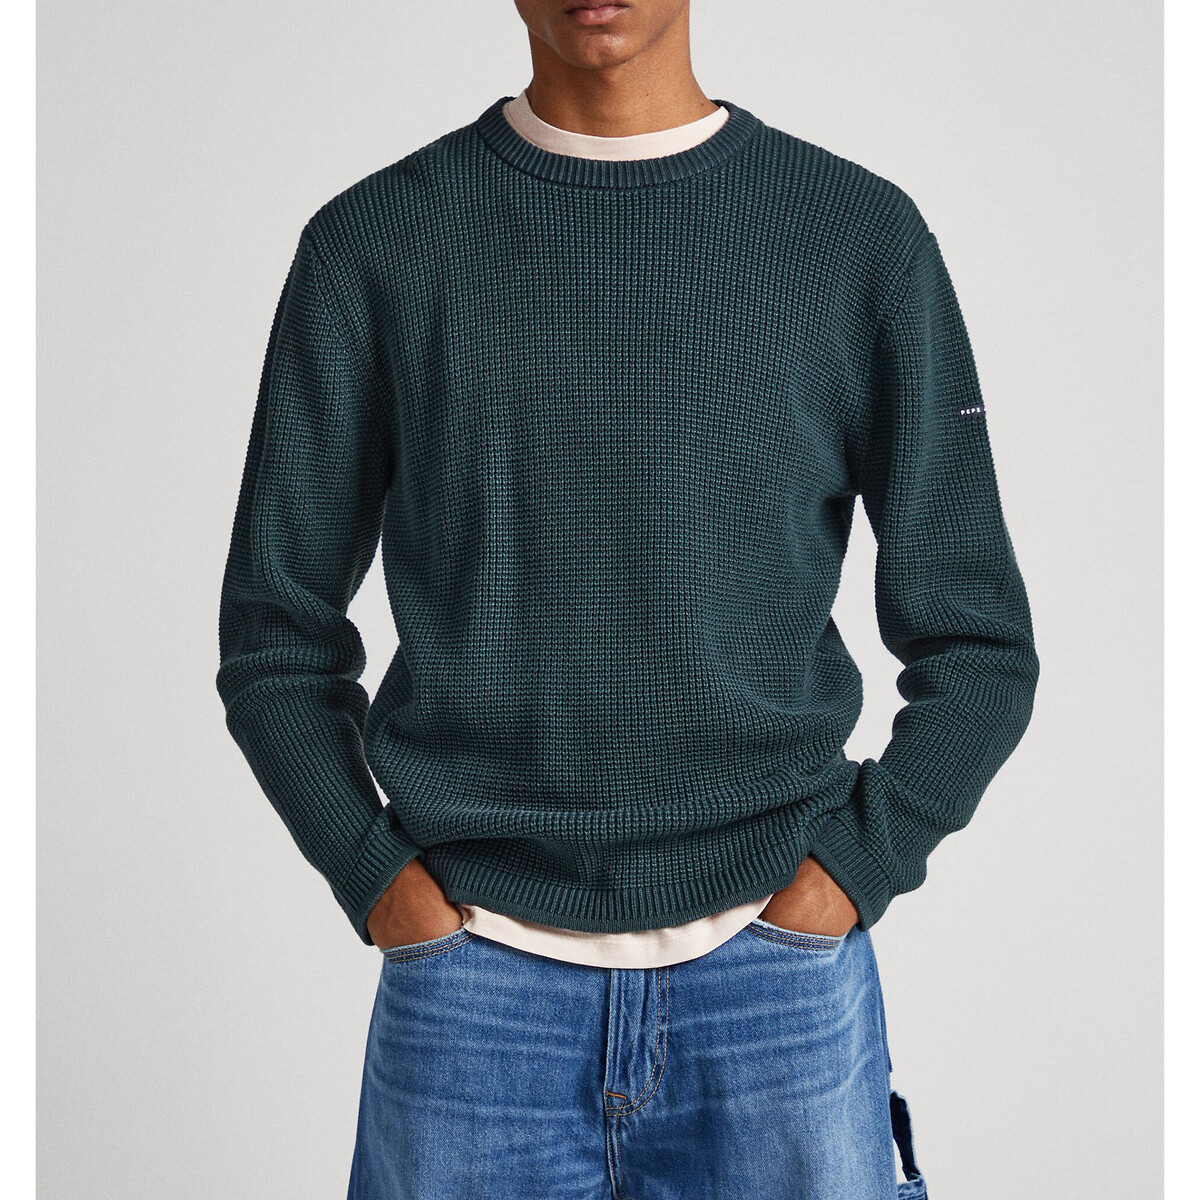 Пуловер С круглым вырезом из текстурного трикотажа Dean S зеленый LaRedoute, размер S